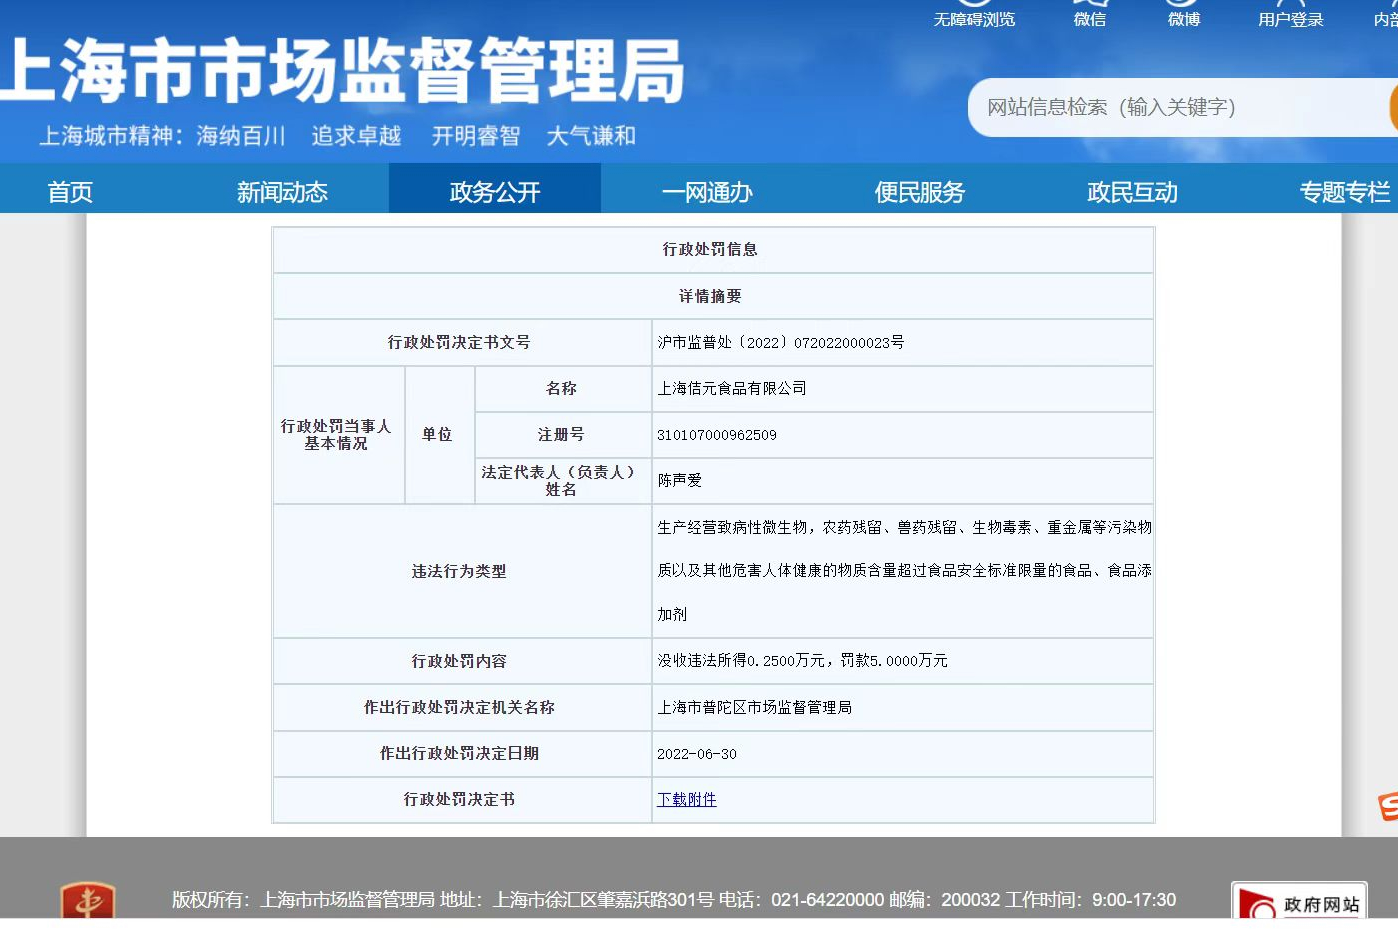 山西省市场监督管理局发布2021年第9期食品安全监督抽检信息-中国质量新闻网